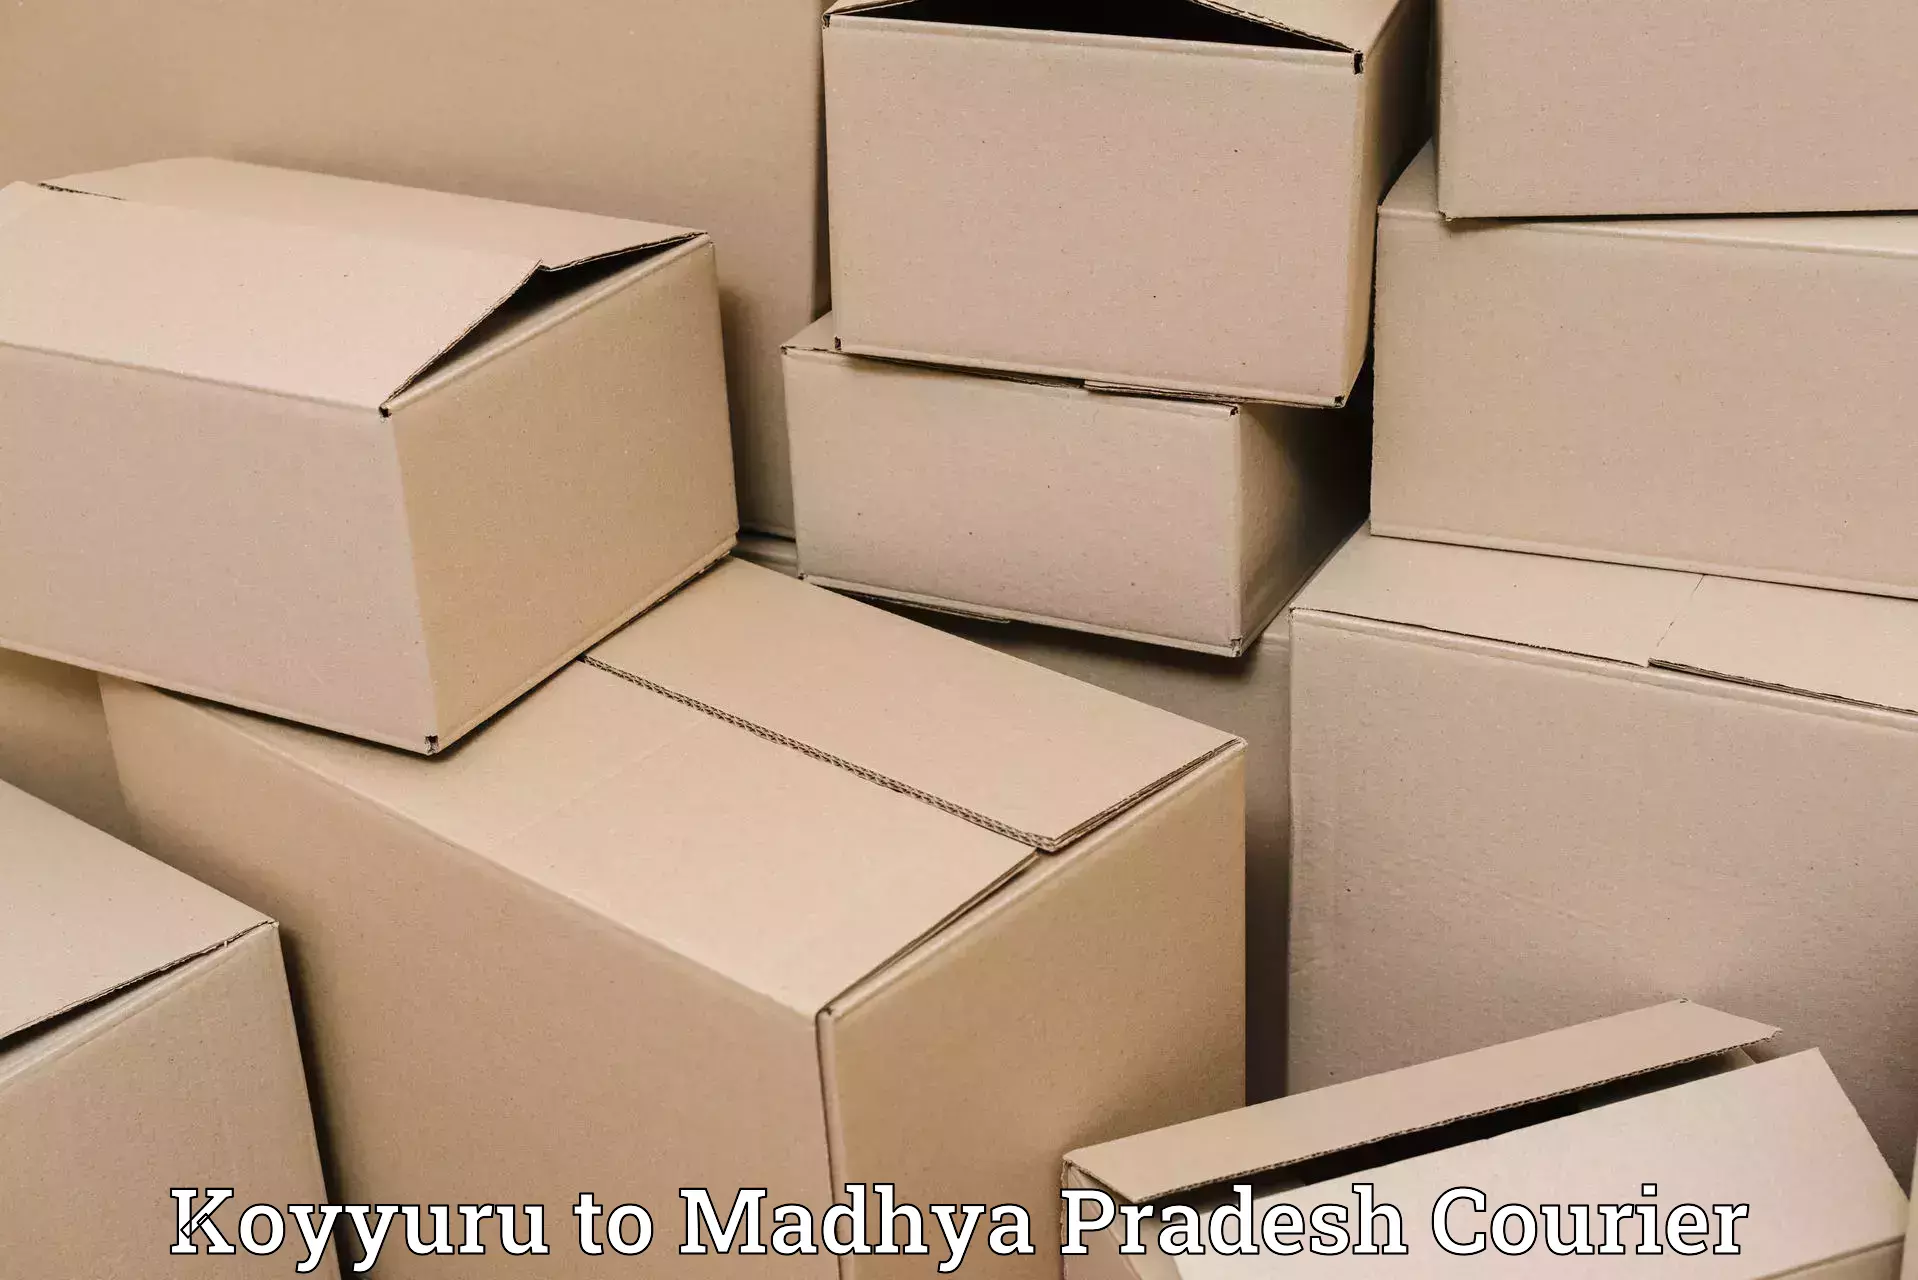 Efficient cargo services Koyyuru to Depalpur